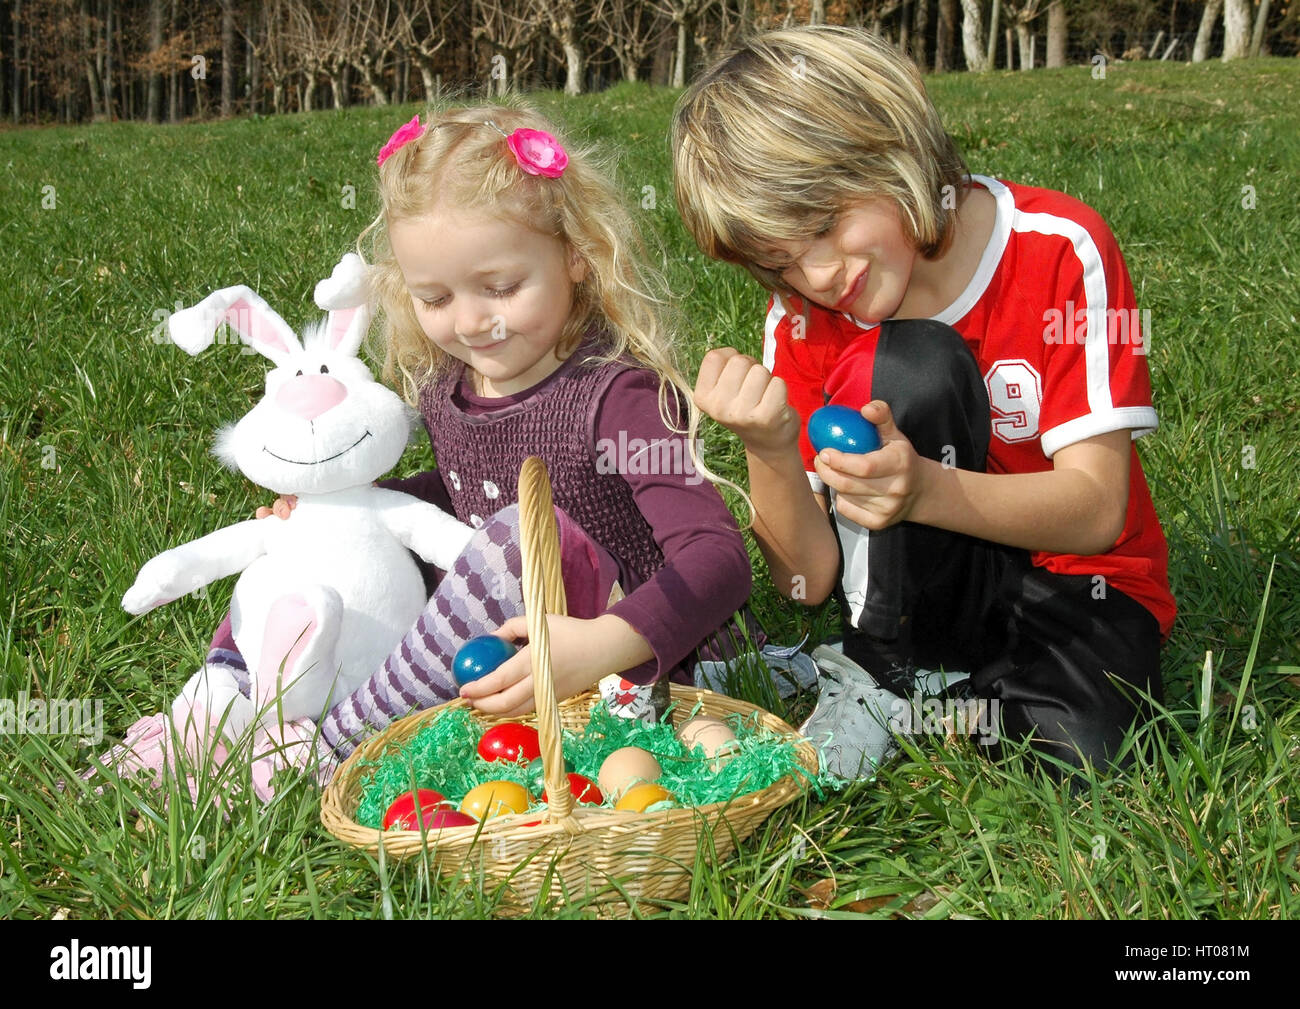 Zwei Kinder mit Osternest in der Wiese - children with Easter nest in meadow Stock Photo